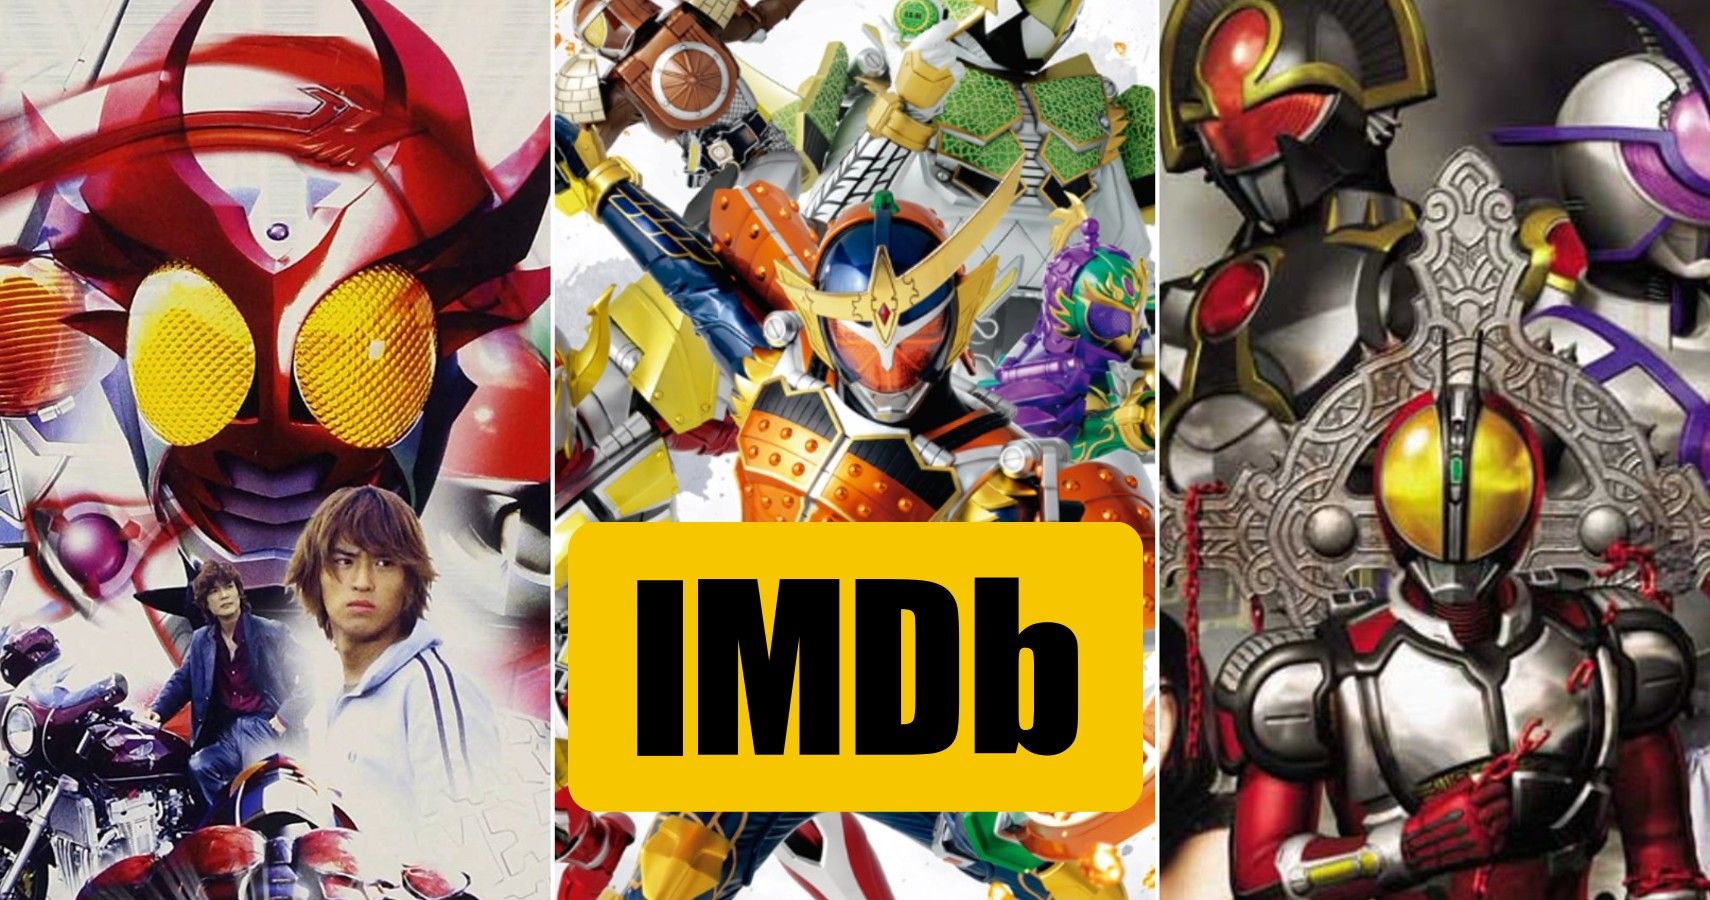 Kamen Rider W (TV Series 2009–2010) - Episode list - IMDb